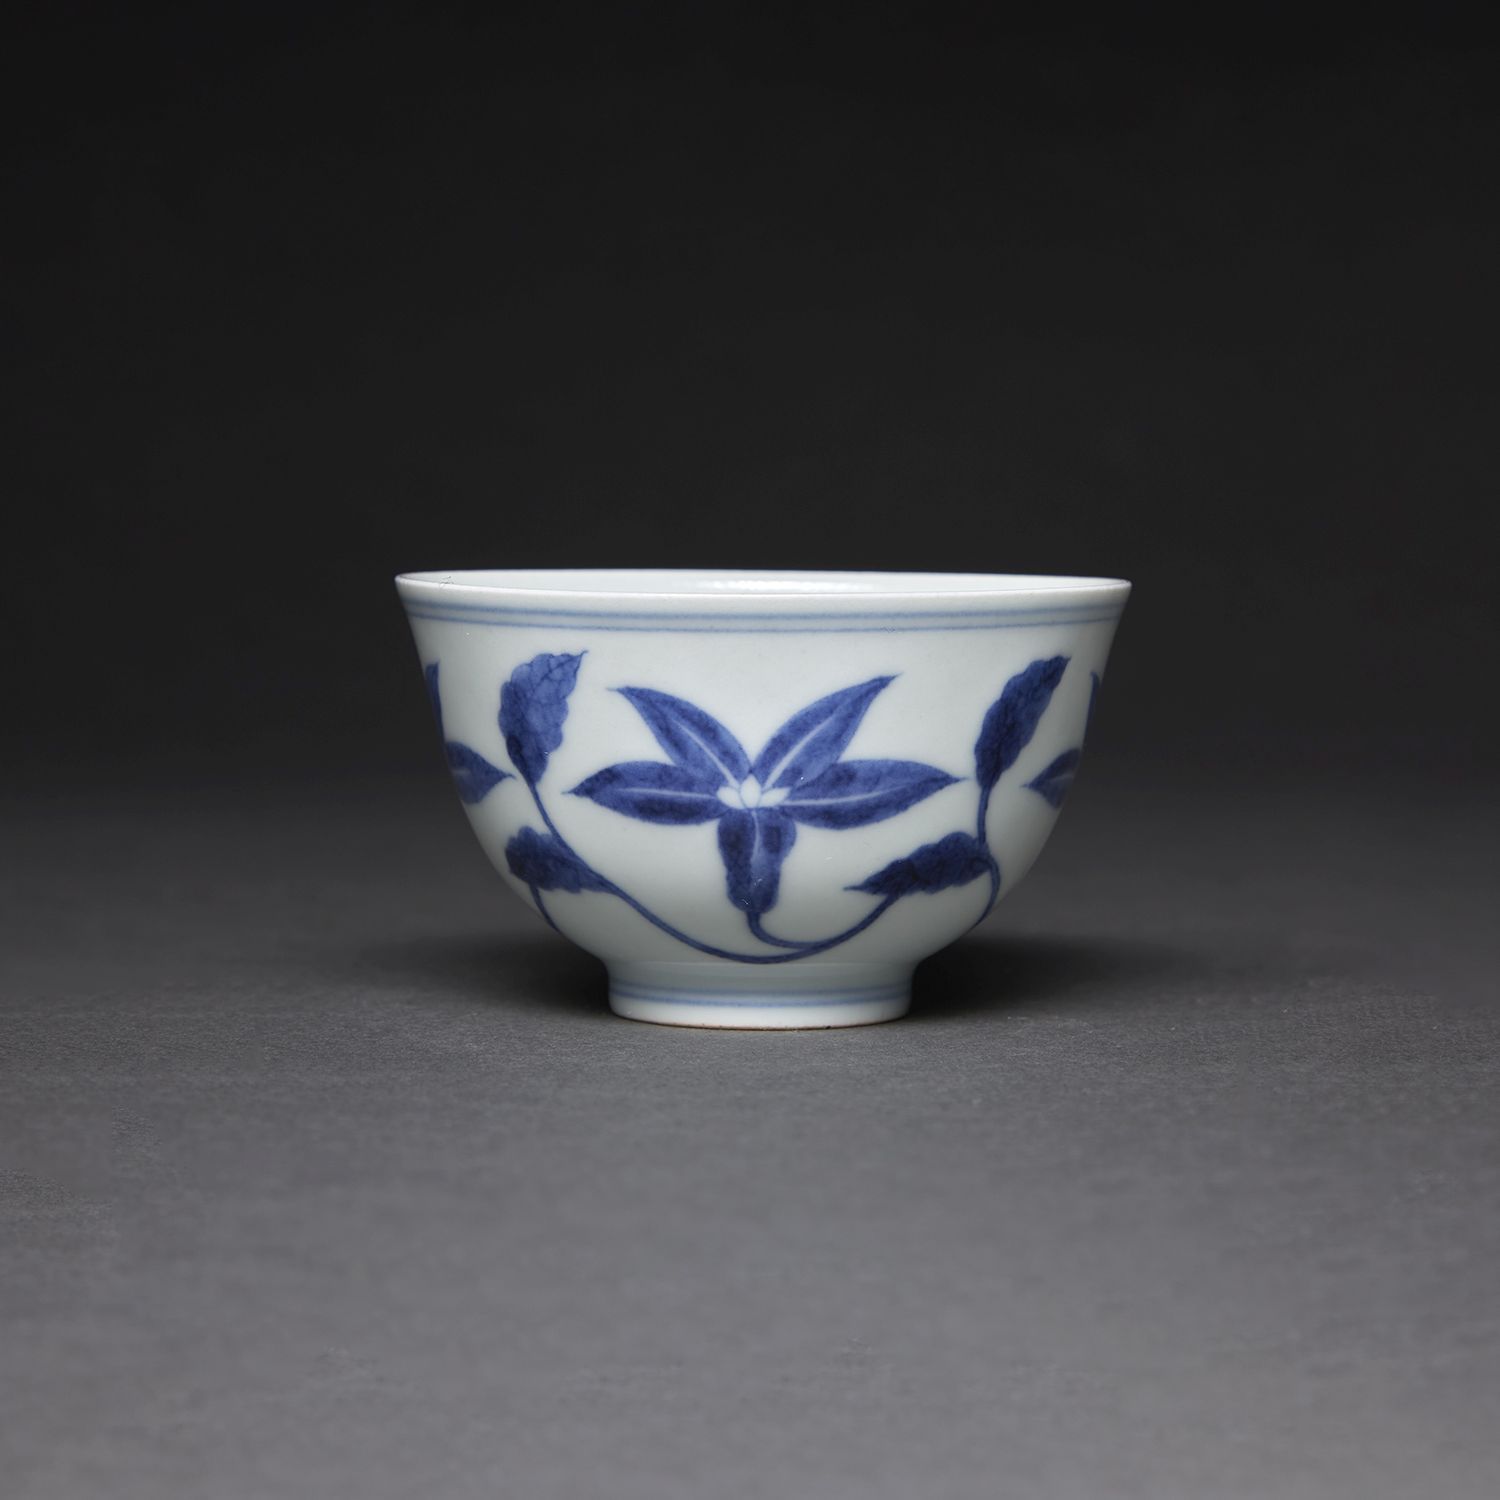 Null 小杯
白蓝色瓷器，饰以花茎。底部有成化皇帝的伪作标记。
中国，20世纪。
-
青花瓷小杯，中国，20世纪。
直径。8 cm (3 1/8 in.)